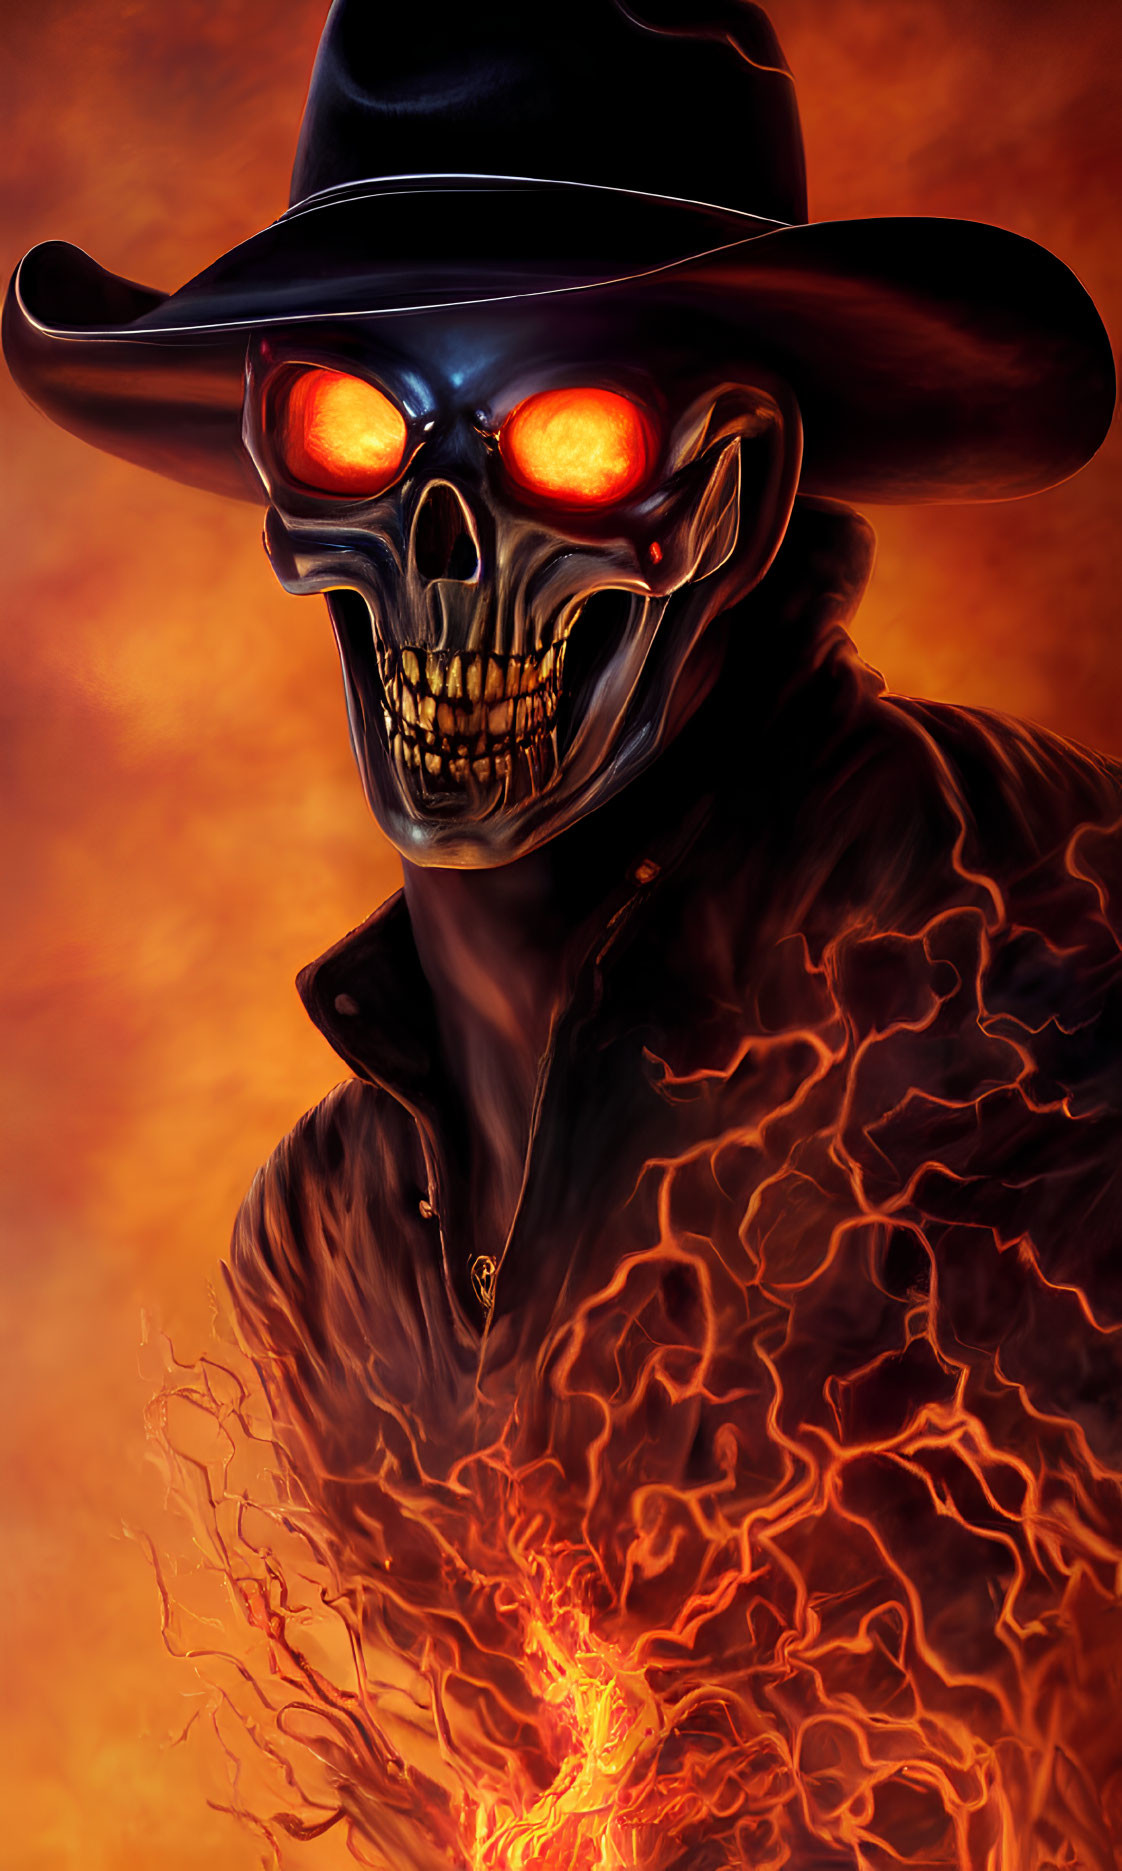 Glowing-eyed skull in wide-brimmed hat against fiery backdrop